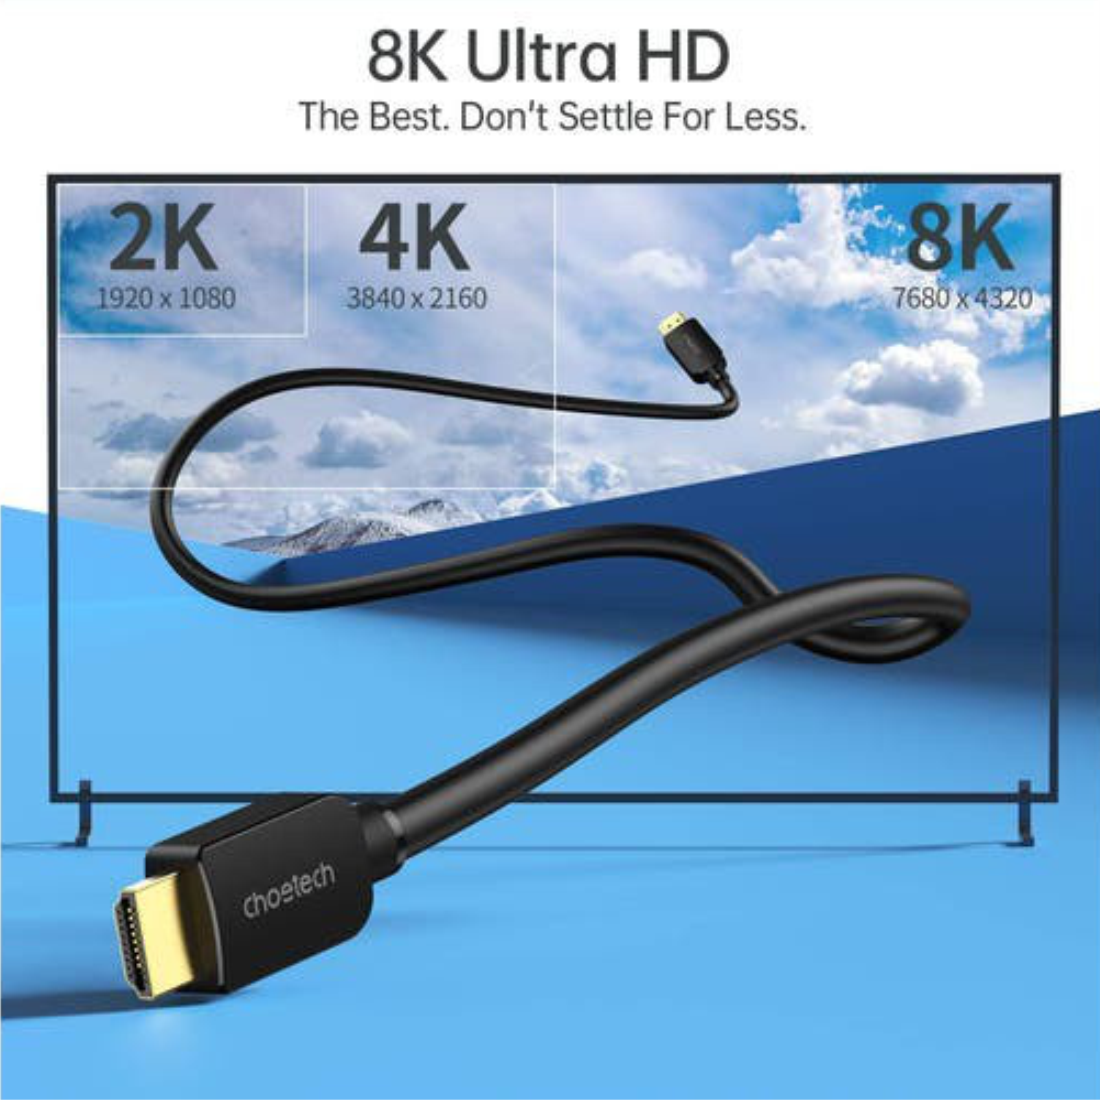 Dây Cáp HDMI 2.1 CHOETECH XHH03-BK Dài 2M Phân Giải Tối Đa 8K 48Gbps, 4K 120Hz Dùng Cho Tivi/Laptop/Playstaysion/PC - Hàng Chính Hãng